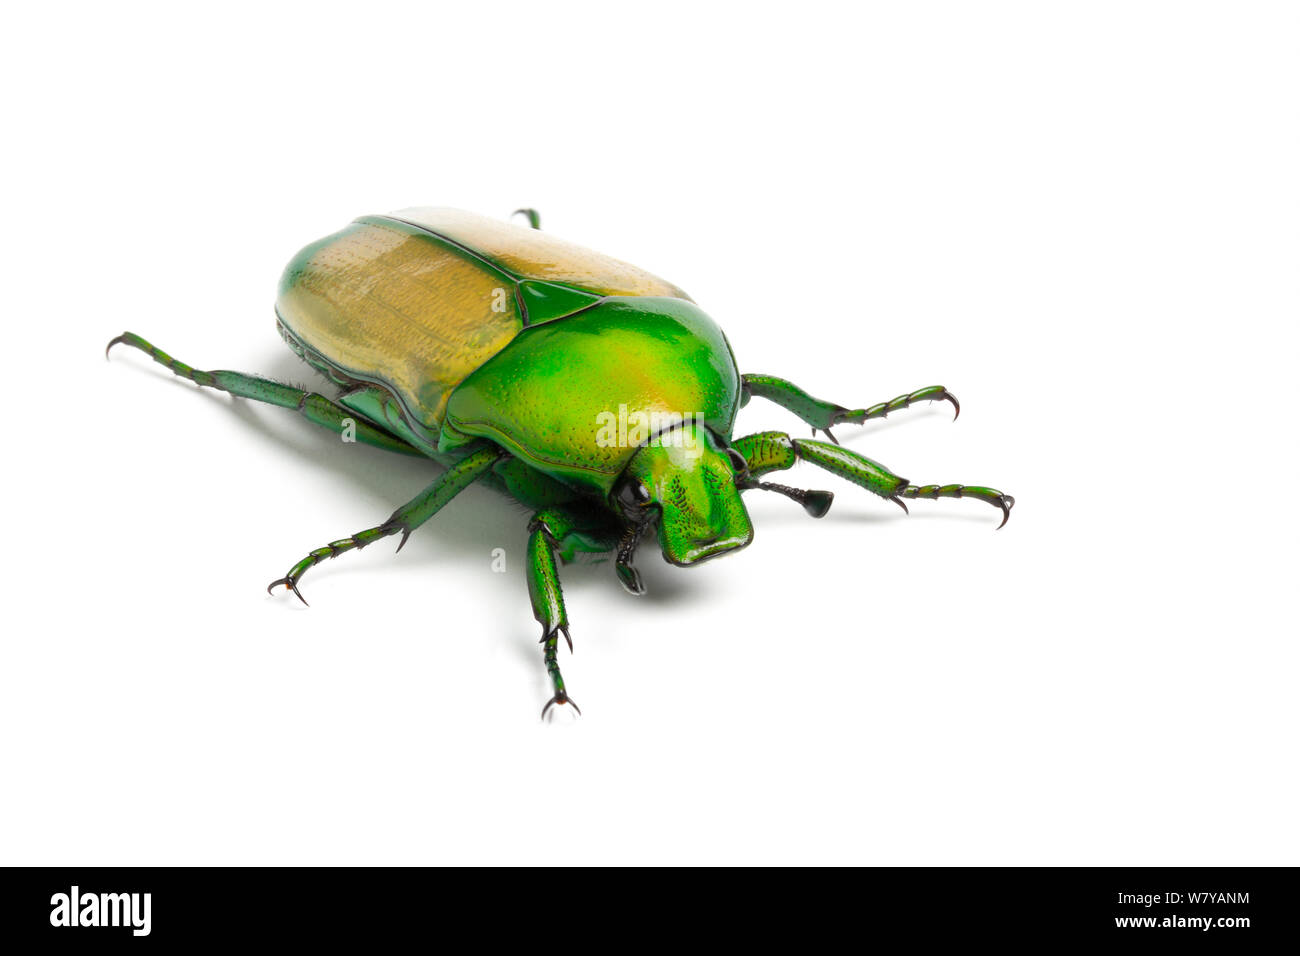 African Jewel Beetle/Obst Käfer (Chlorocala africana camerunica) unverlierbaren, tritt in Afrika. Bild aufgenommen mit Hilfe digitaler Fokus - stapeln. Stockfoto